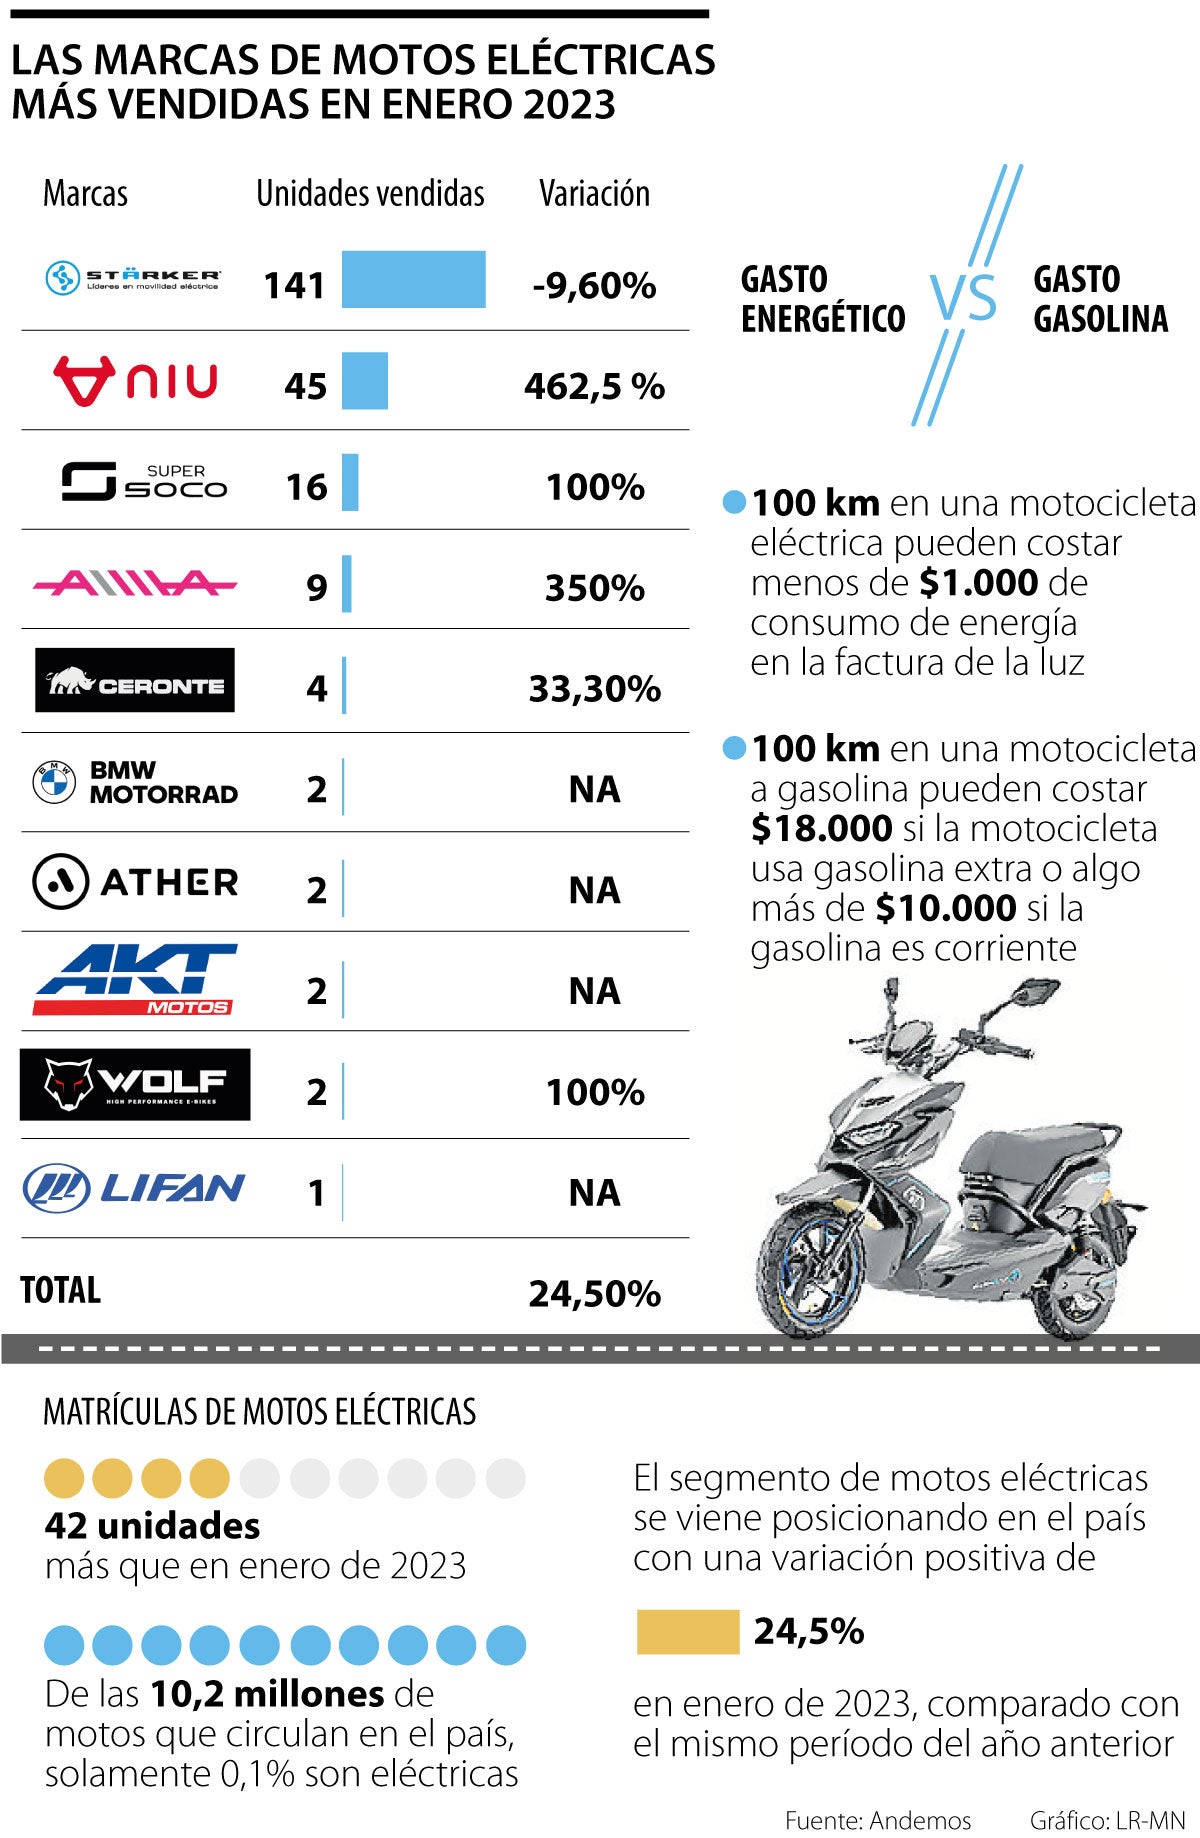 Las marcas de motos eléctricas más vendidas en enero de 2023 